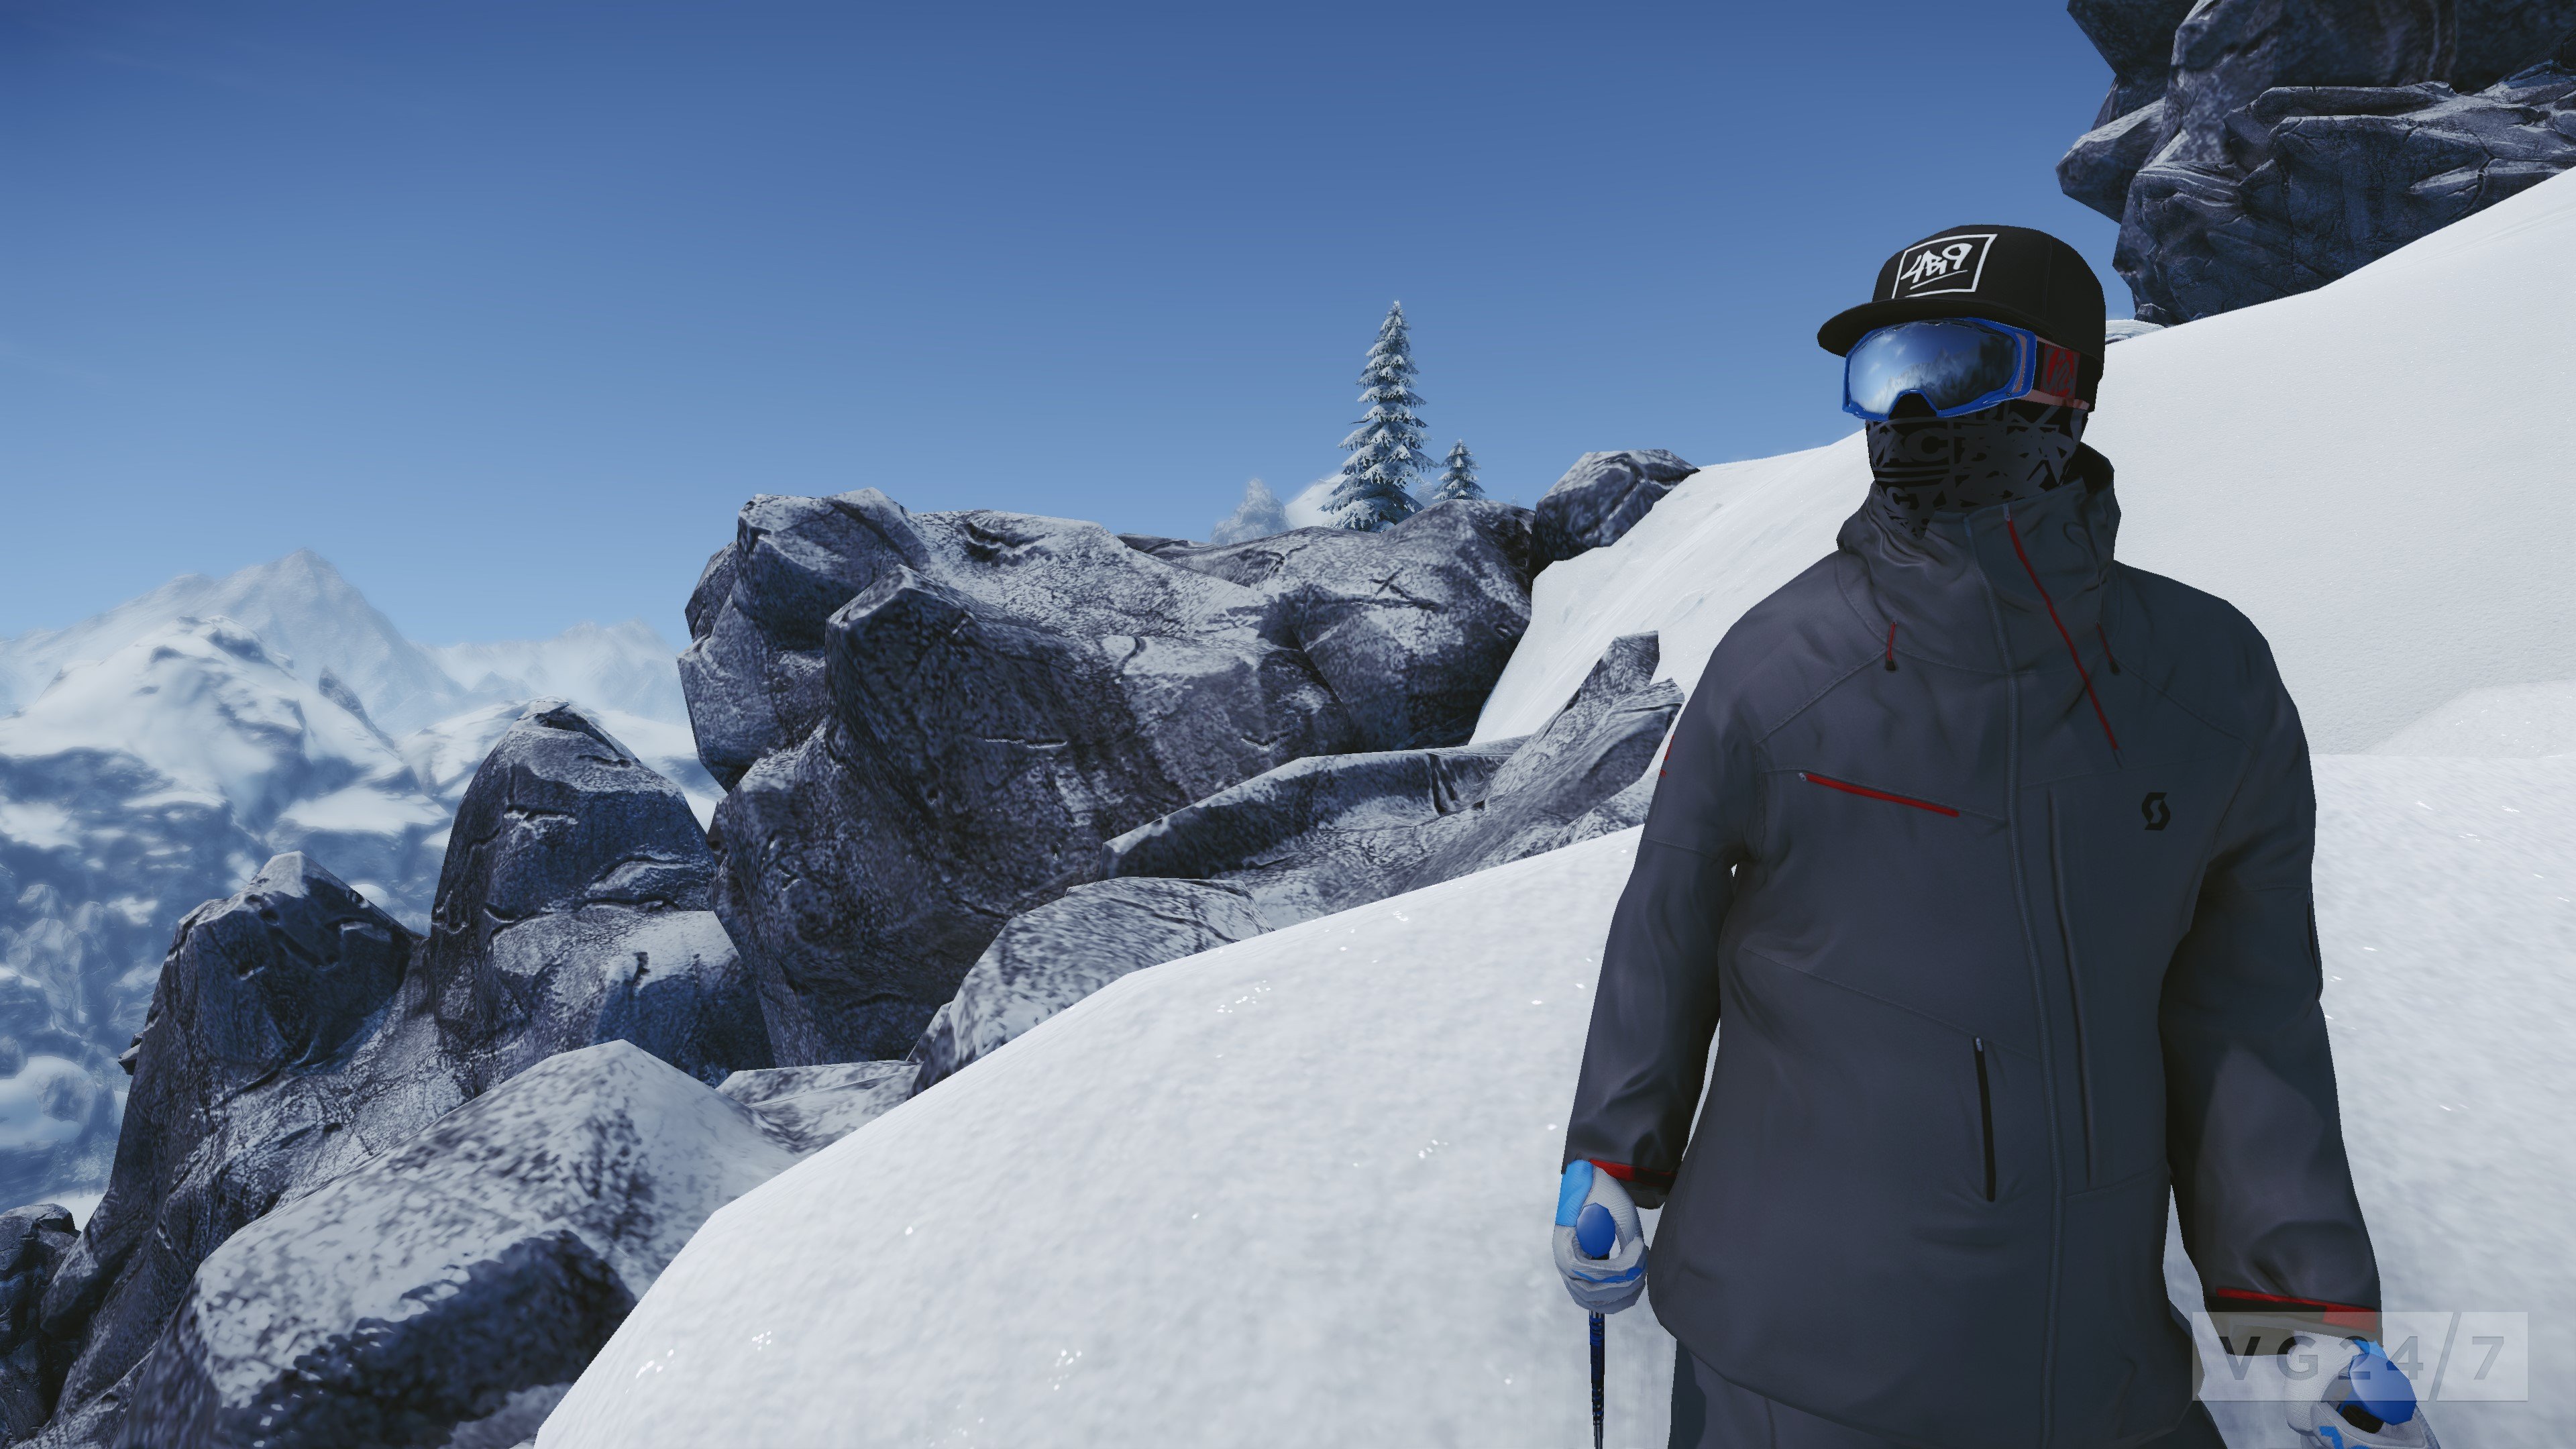 Oznámena hra SNOW, bude Free-to-play na CryEngine 3 v otevřeném prostředí